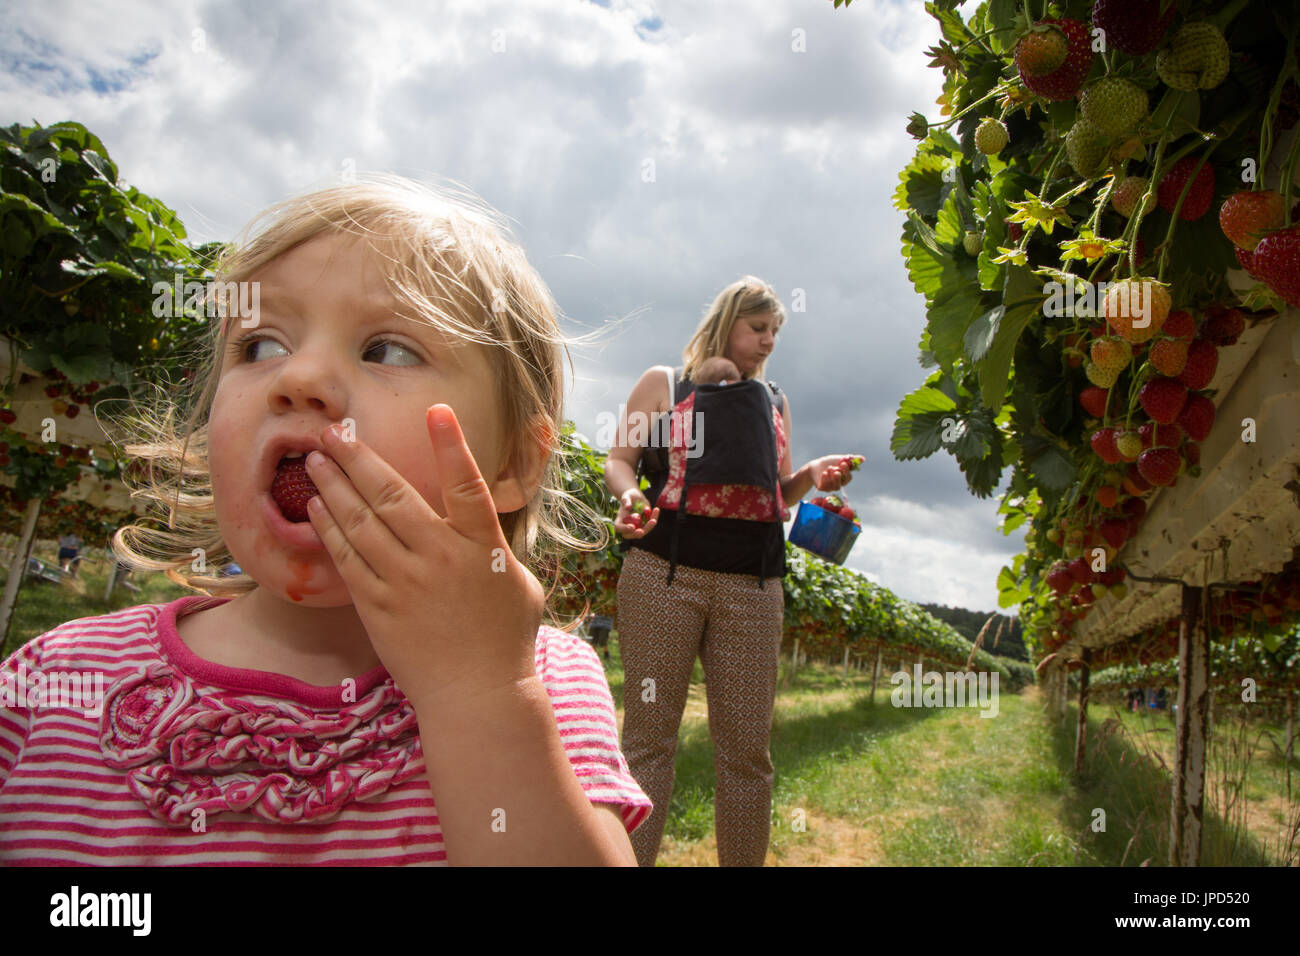 Un Bimbo bimba di diciotto mesi di mangiare fragole in un pick-il vostro-proprio-farm in Inghilterra. La madre e la sorella del bambino sono in background Foto Stock